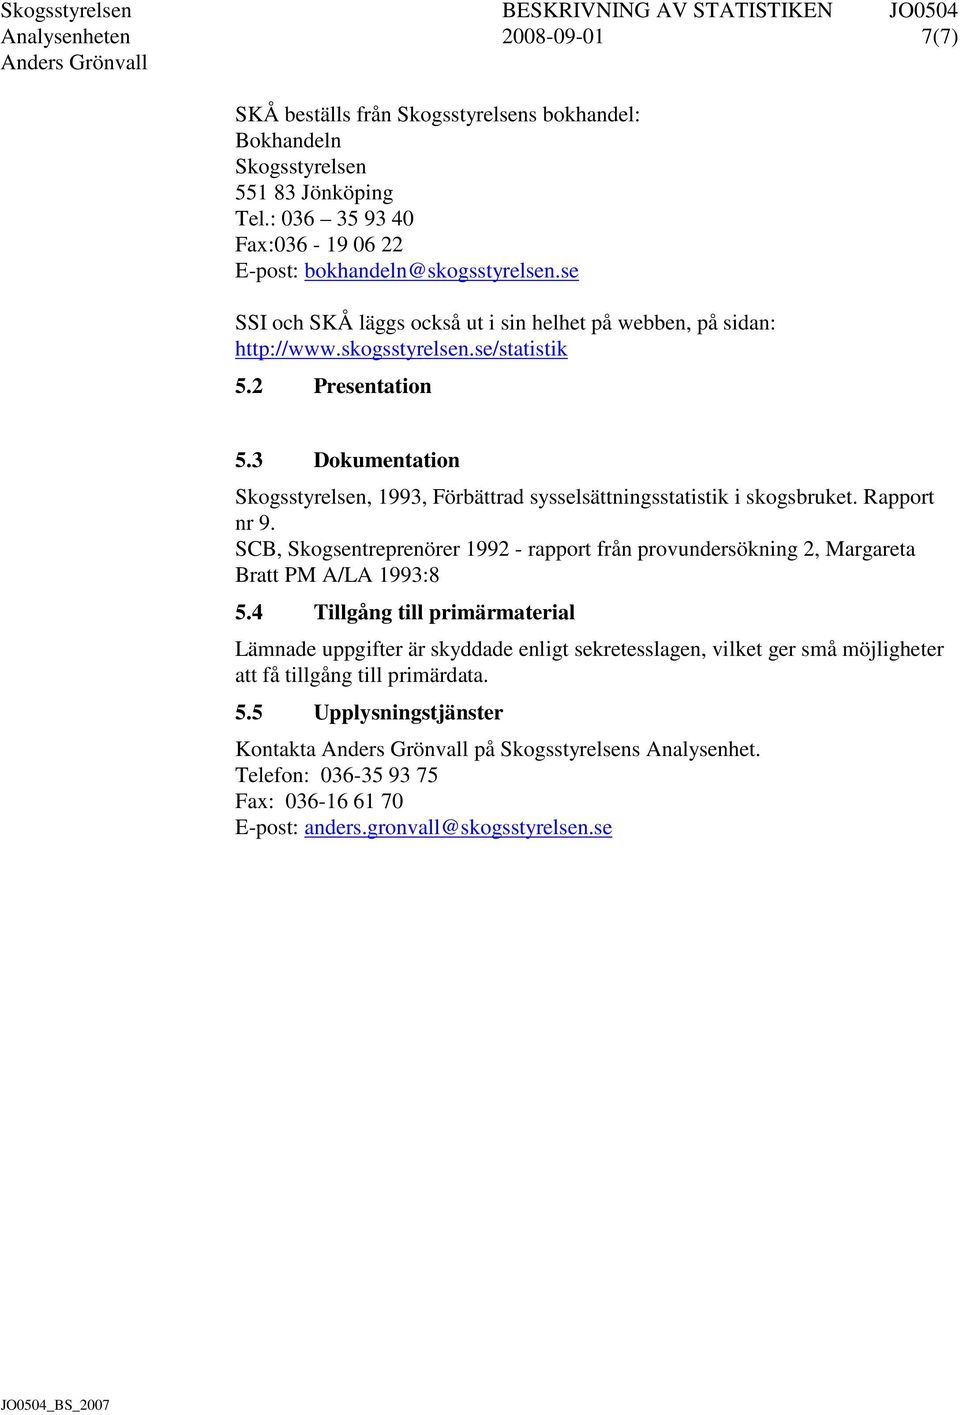 3 Dokumentation Skogsstyrelsen, 1993, Förbättrad sysselsättningsstatistik i skogsbruket. Rapport nr 9. SCB, Skogsentreprenörer 1992 - rapport från provundersökning 2, Margareta Bratt PM A/LA 1993:8 5.